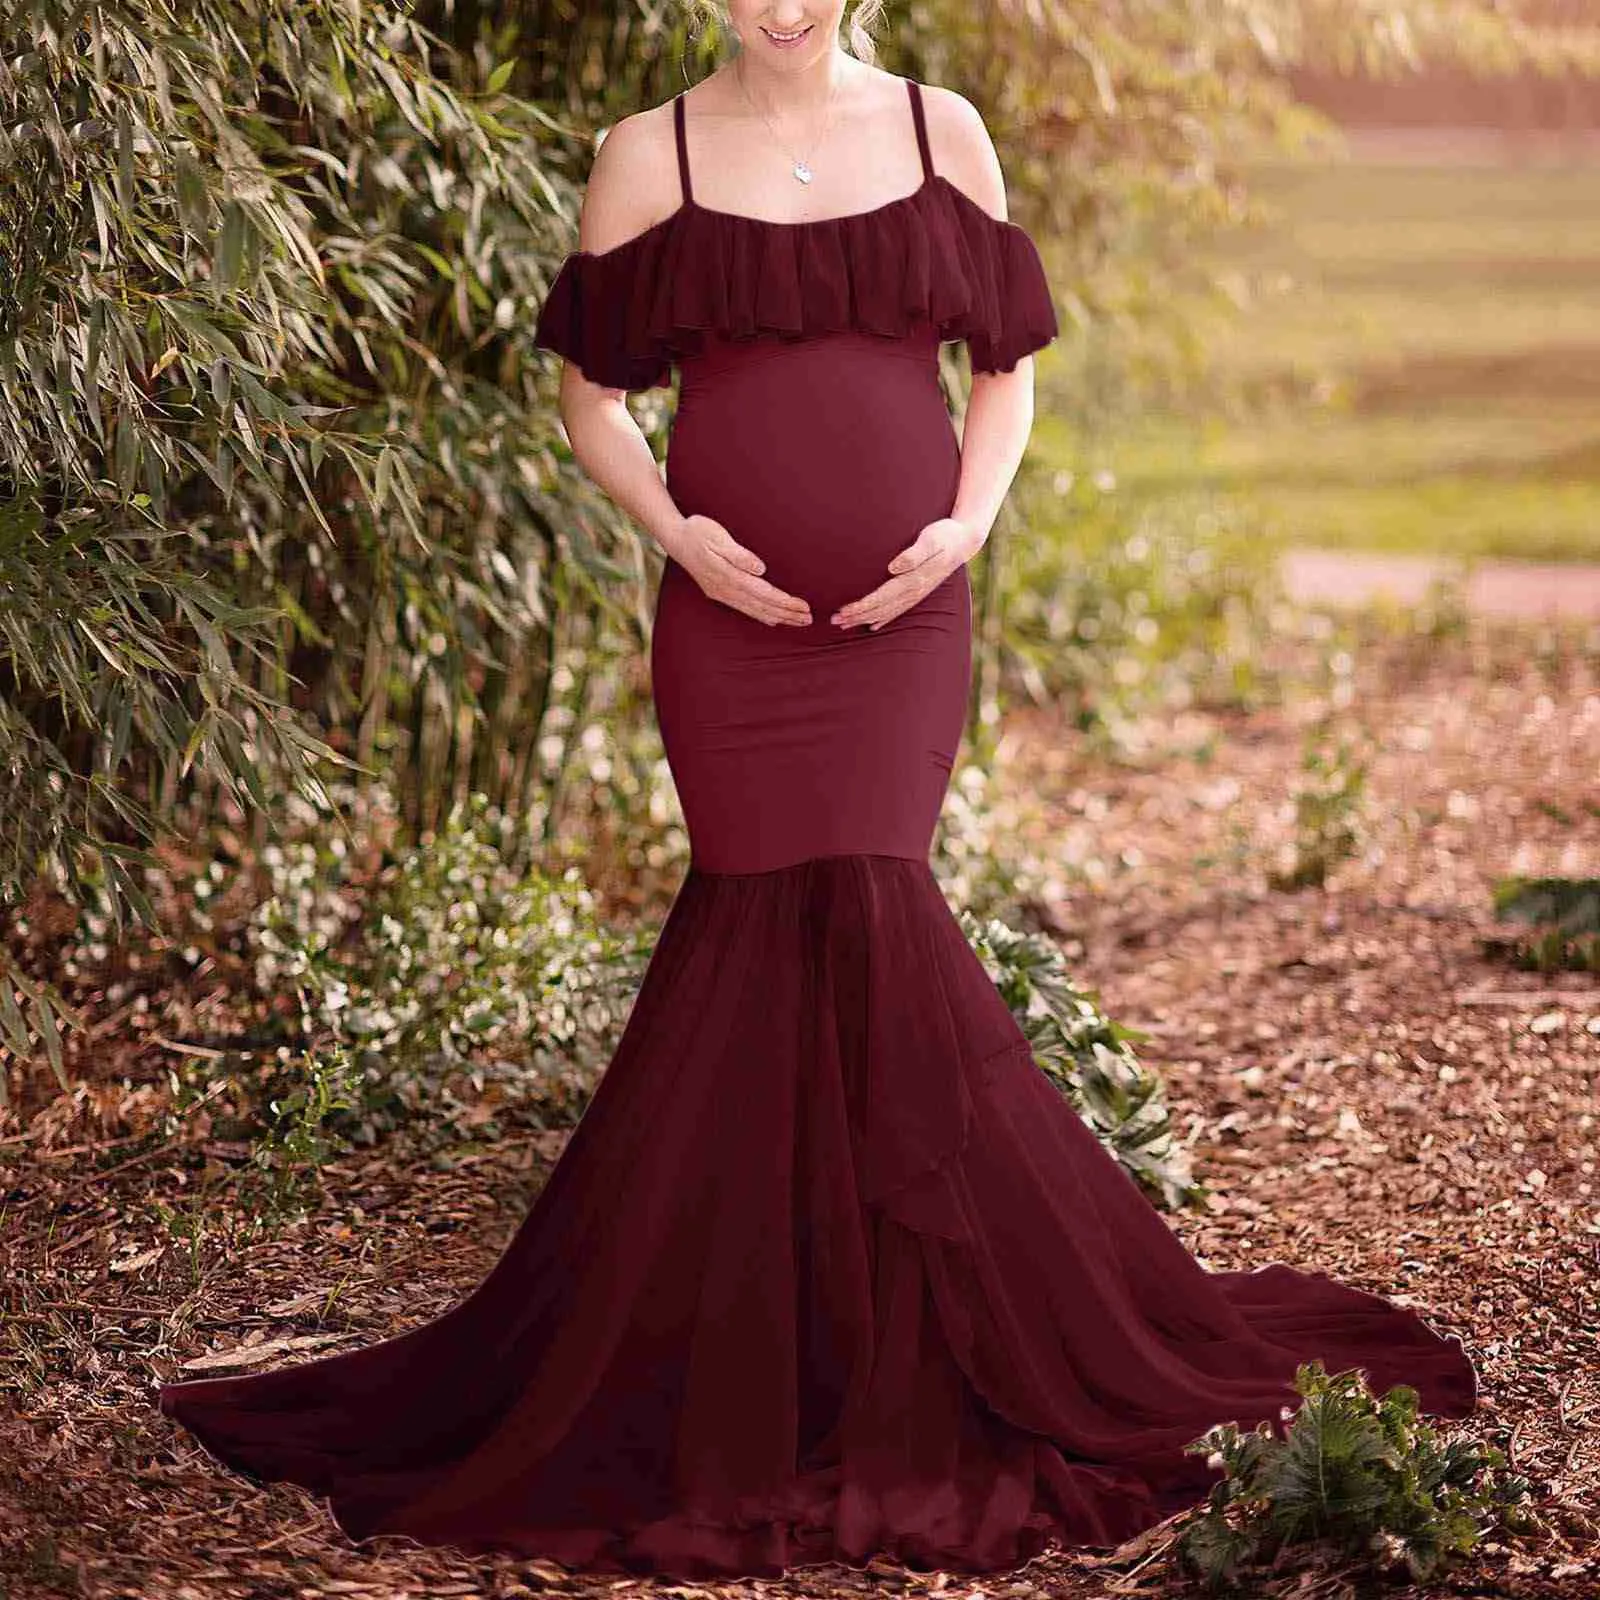 Moderskapsklänningar moderskap svans lång klänning kvinnor gravid